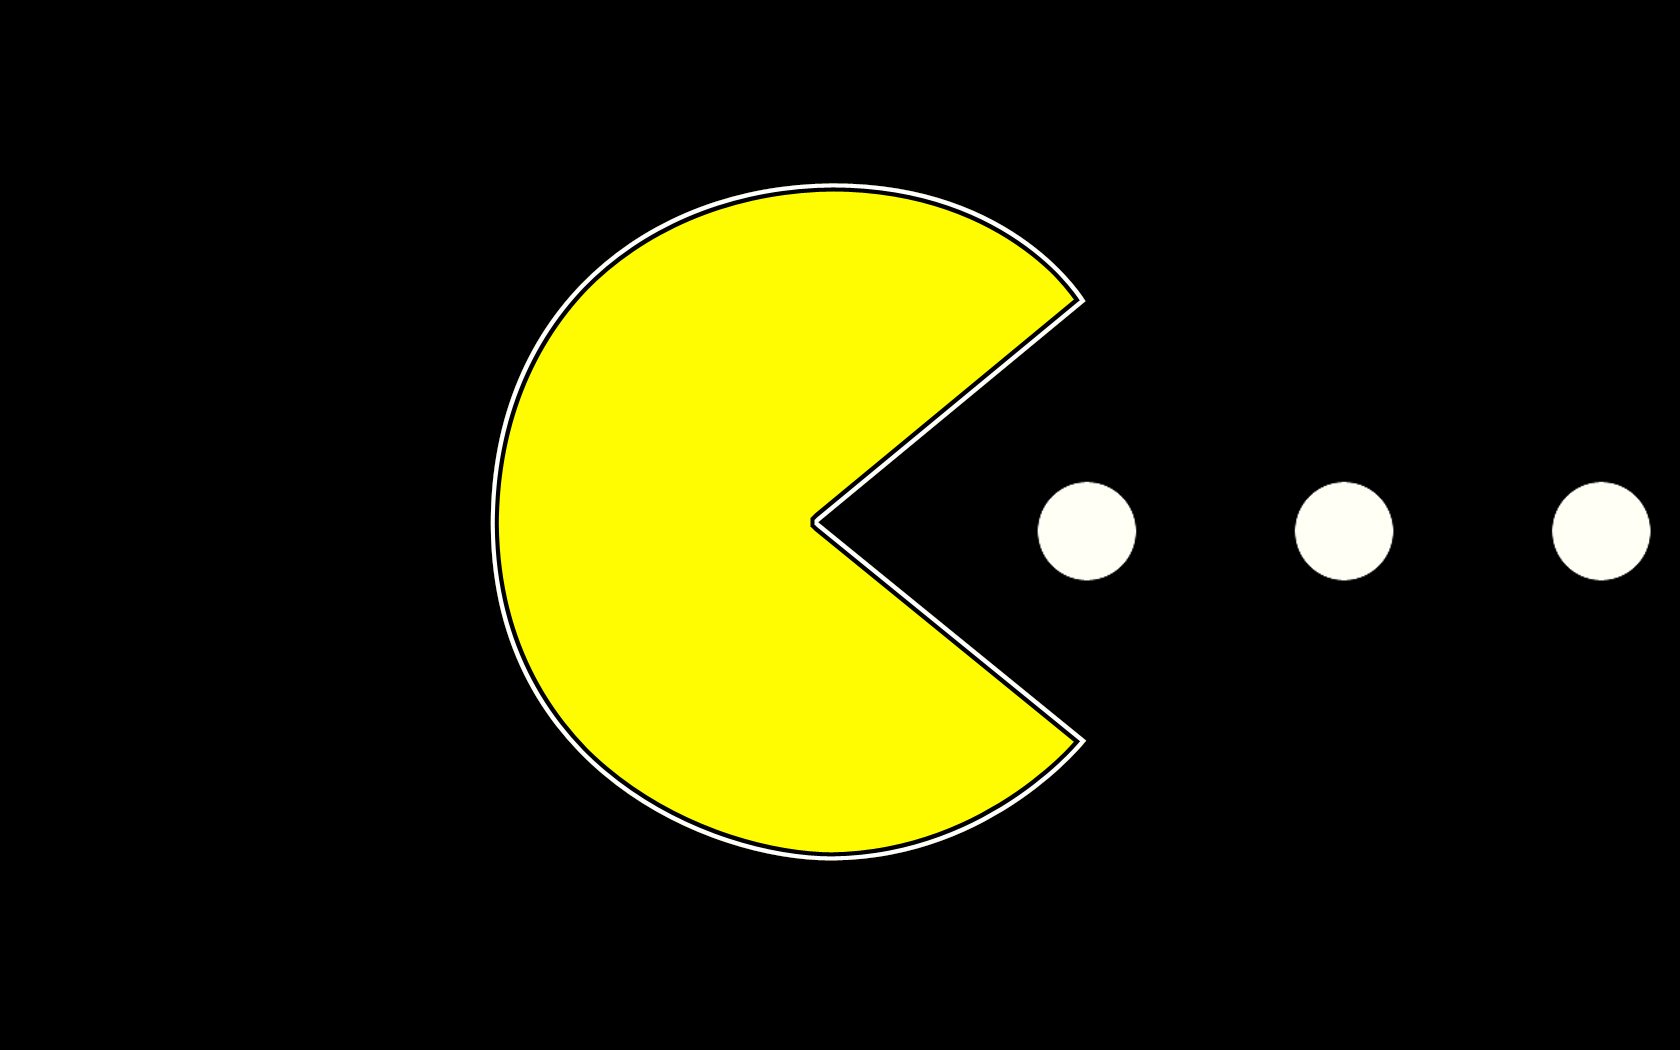 Pac man game. Пак Мэн. Пакман игра. Pacman логотип. Настоящий Пакман.